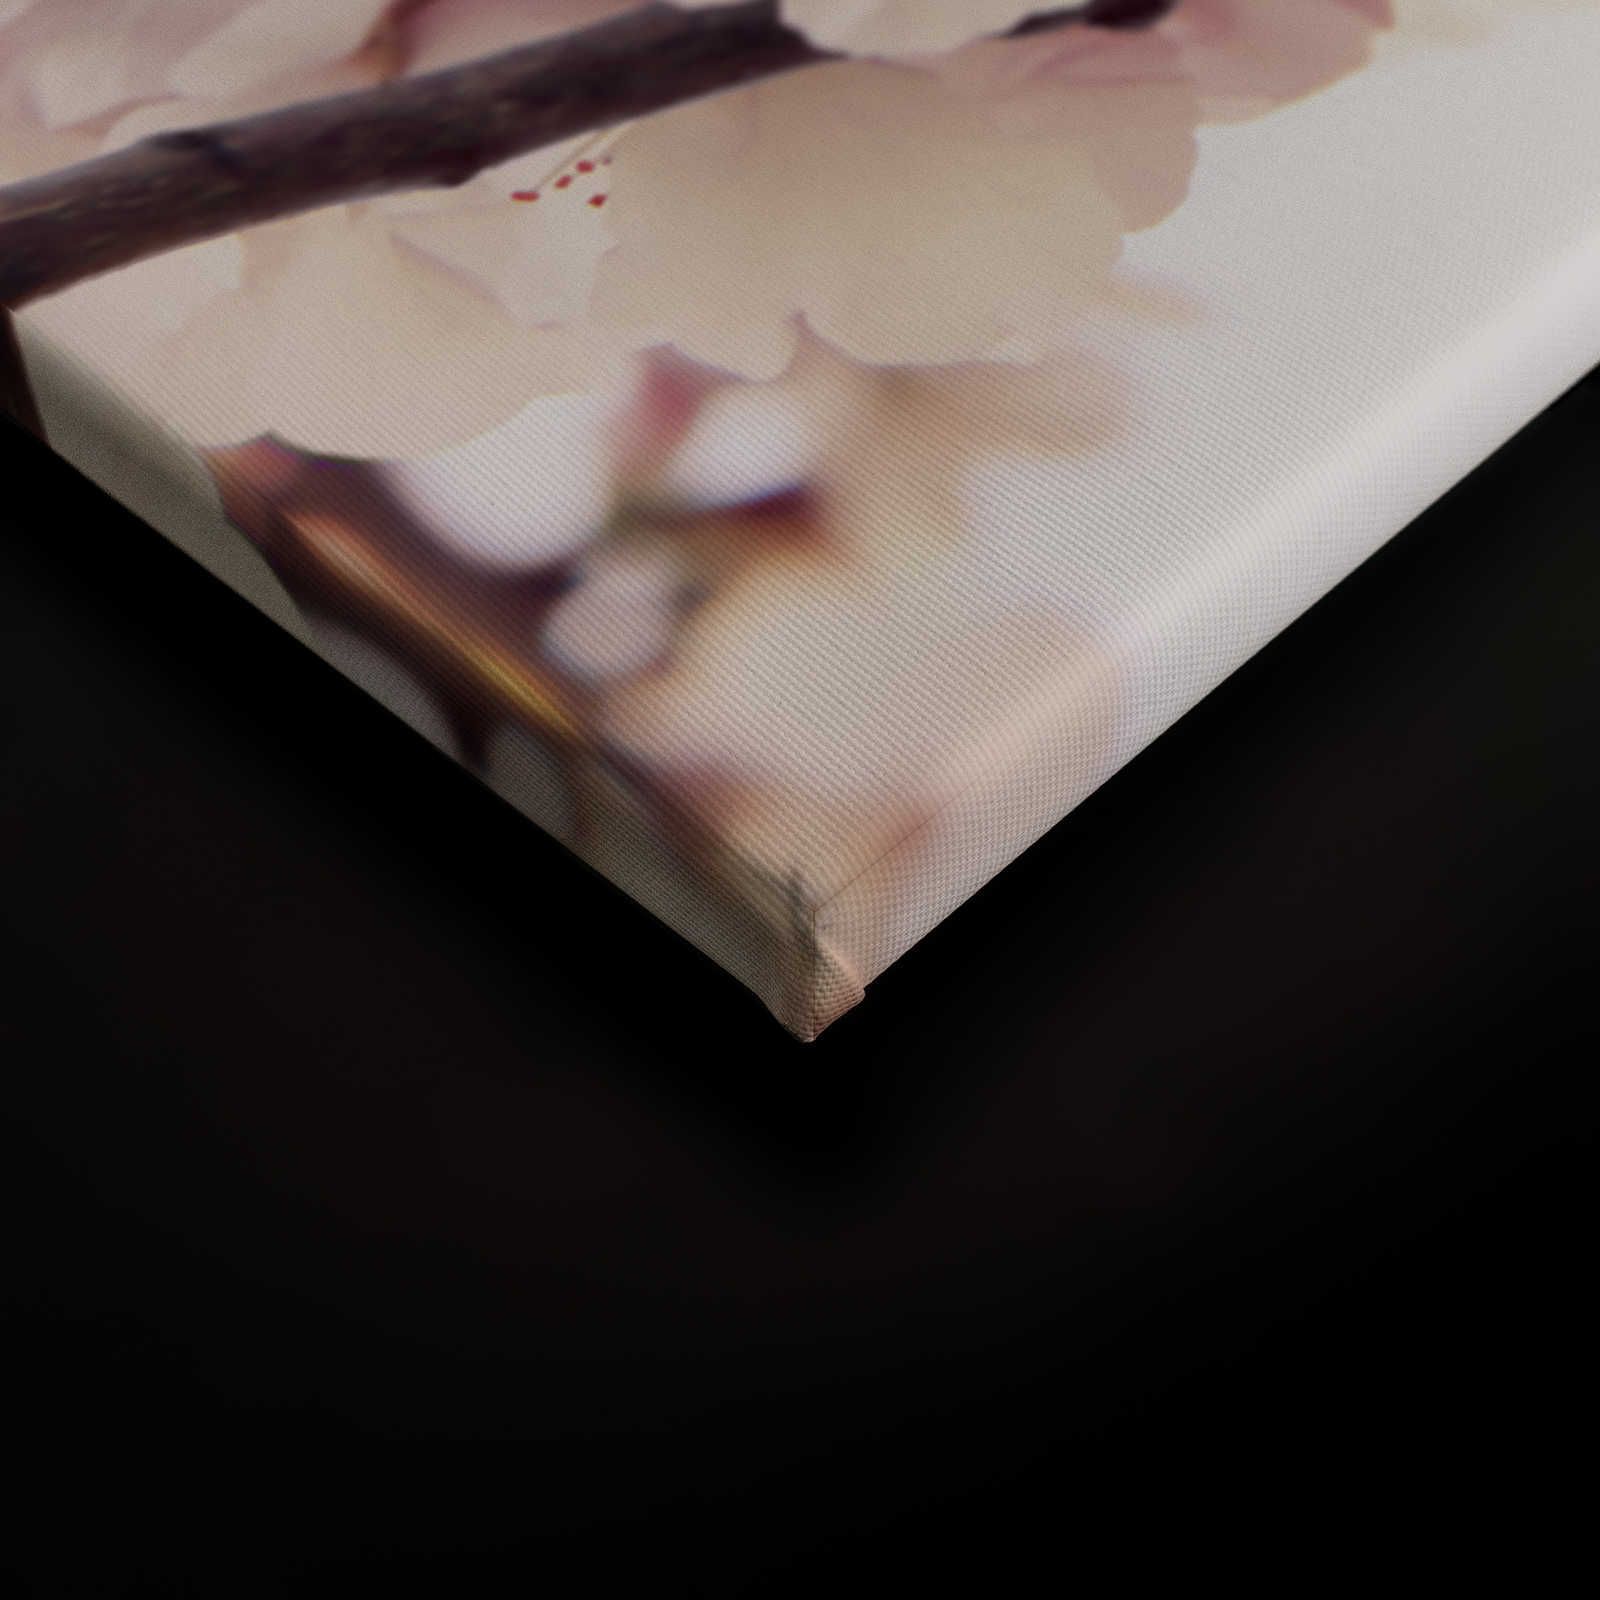             Pittura su tela con fiori di ciliegio - 0,90 m x 0,60 m
        